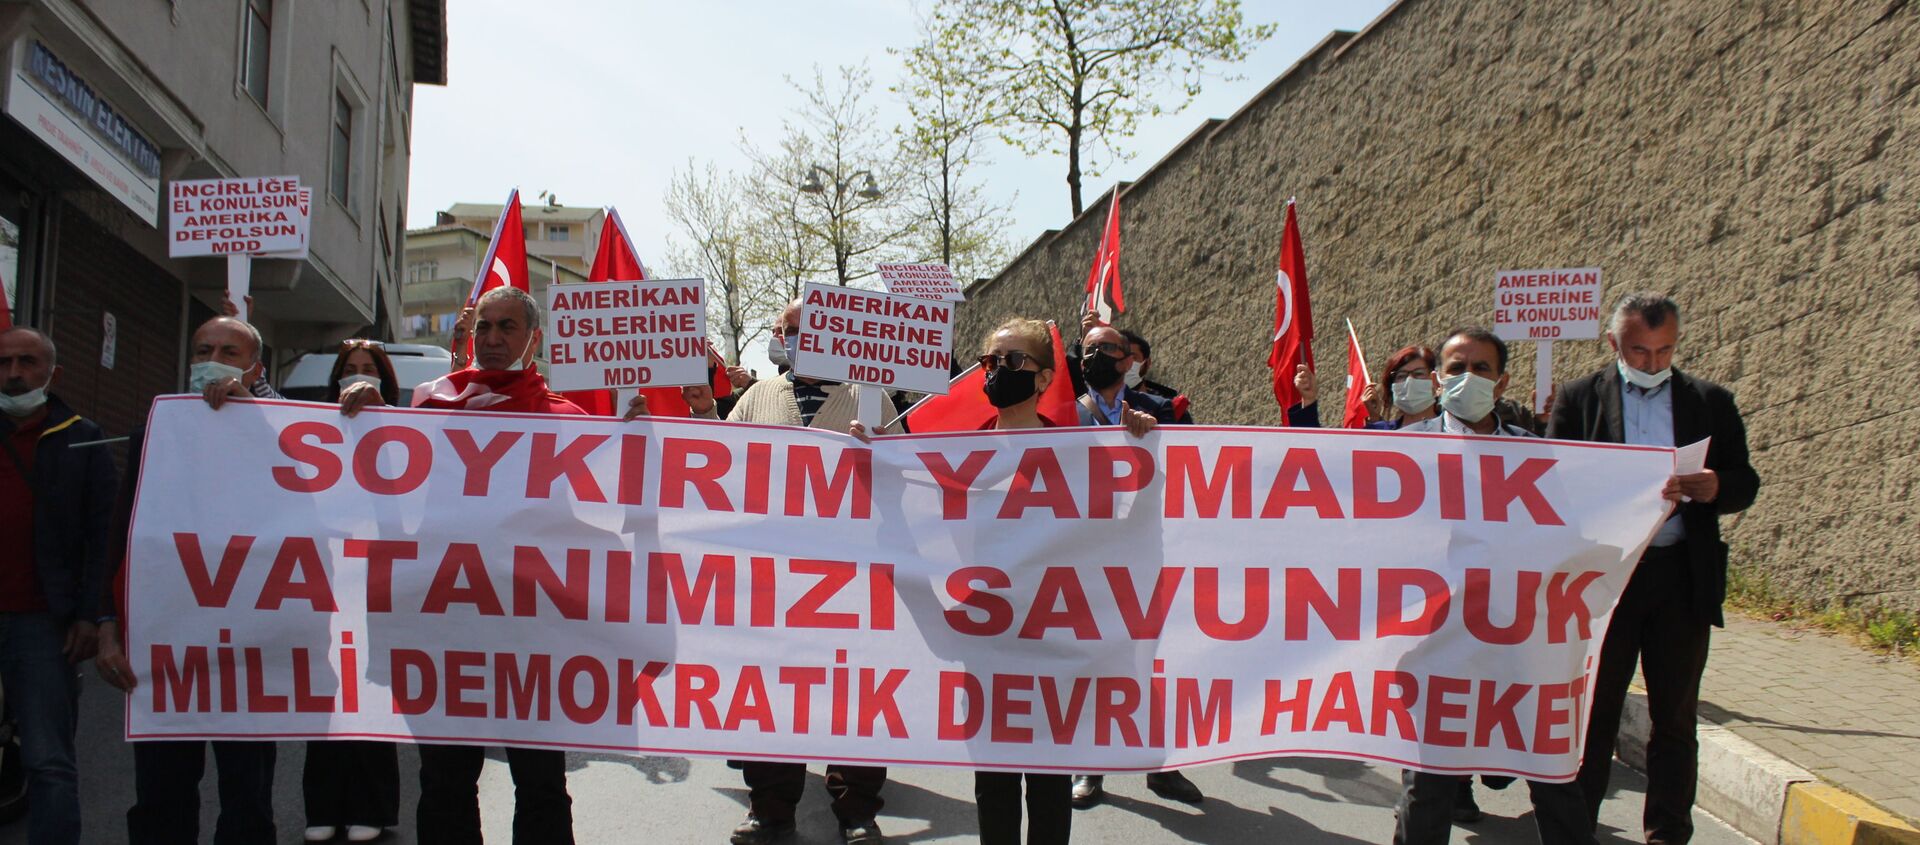 MDD Hareketi, Biden'ın 'soykırım' açıklamasını protesto etti - Sputnik Türkiye, 1920, 27.04.2021